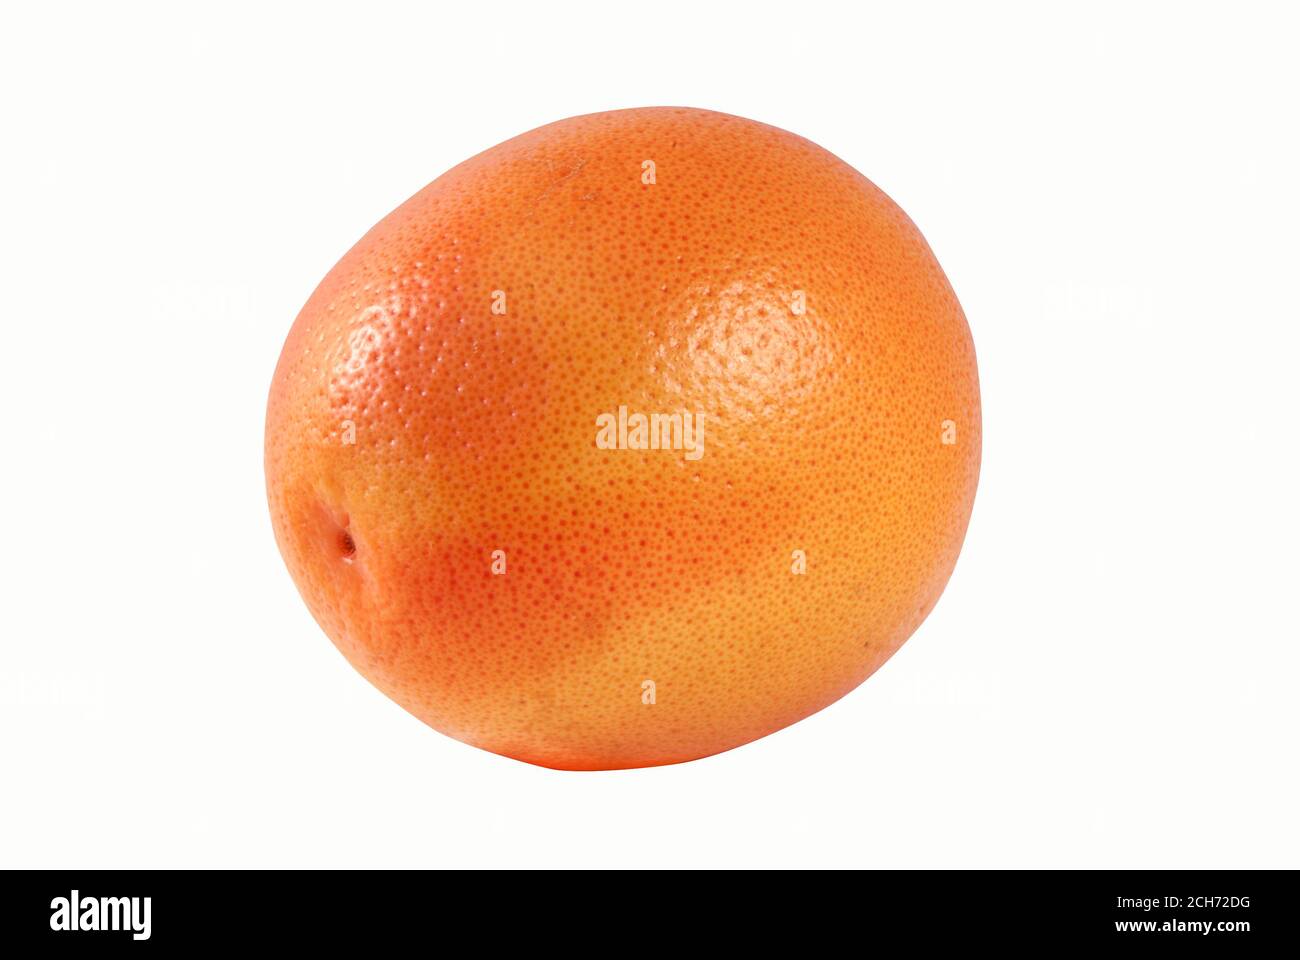 Orange one on white background Stock Photo